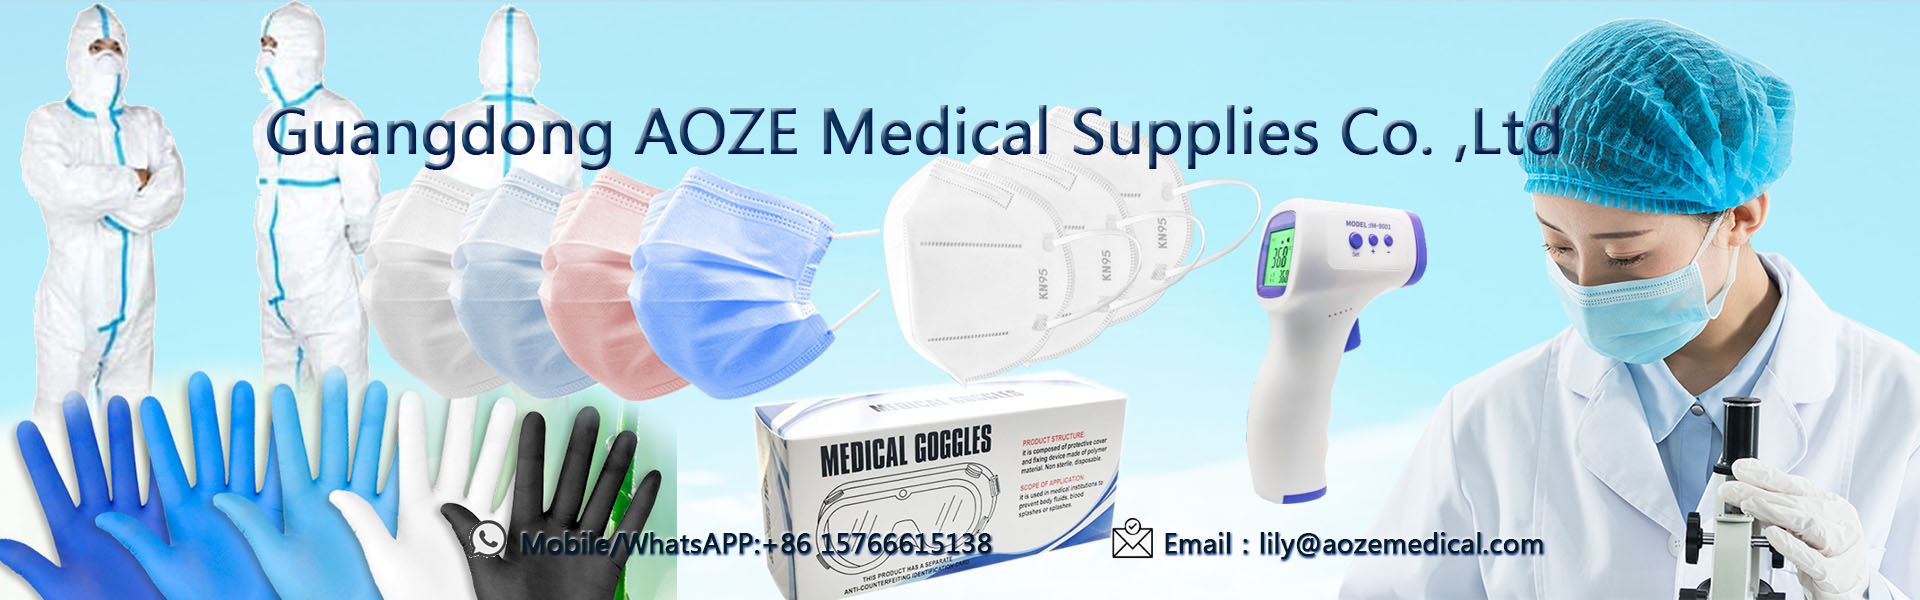 3värkeä kertakäyttöinen naamio, kn95-kasvonaamio, kirurginen kasvonaamio,Guangdong AOZE Medical Supplies Co.,Ltd